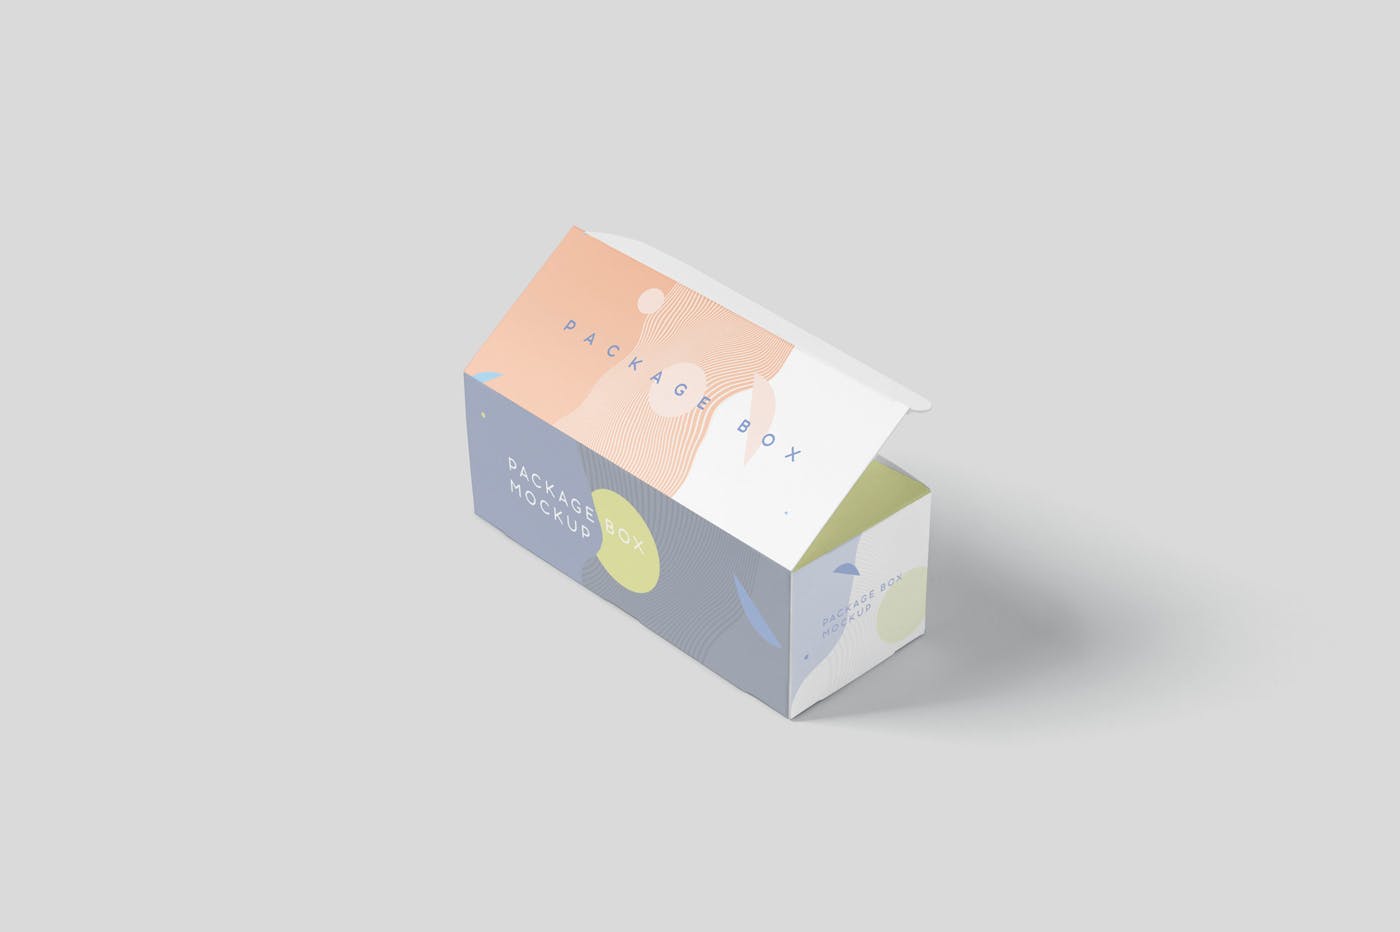 宽矩形包装盒外观设计效果图蚂蚁素材精选 Package Box Mock-Up Set – Wide Rectangle插图(5)